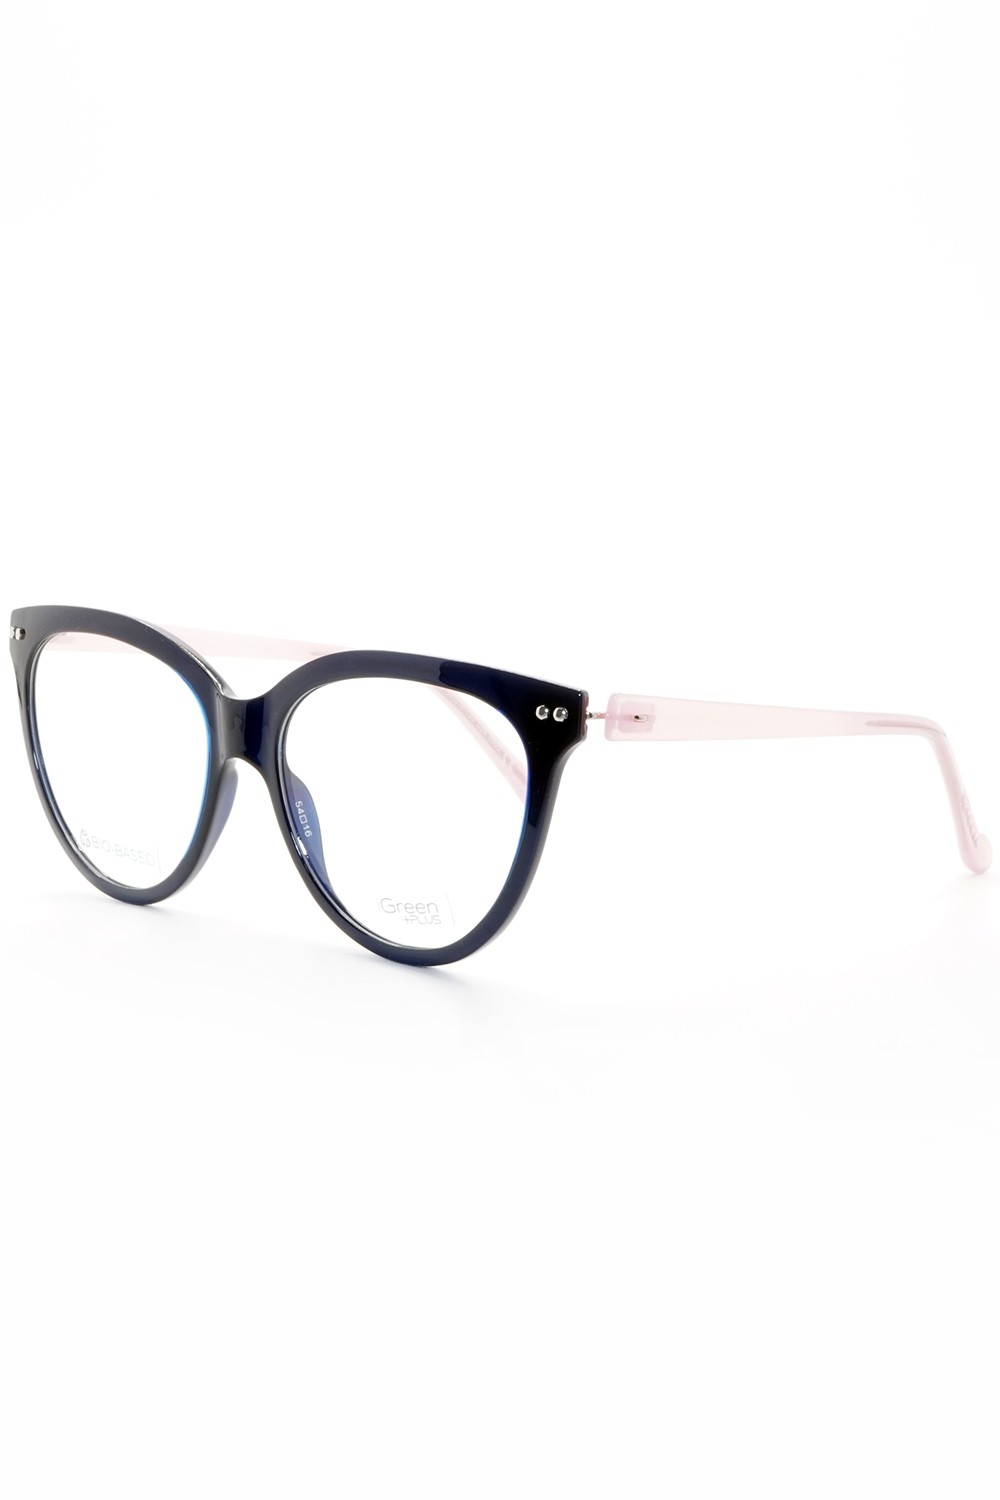 iGreen - Occhiali da vista in celluloide cat eye per donna con clip solare blu